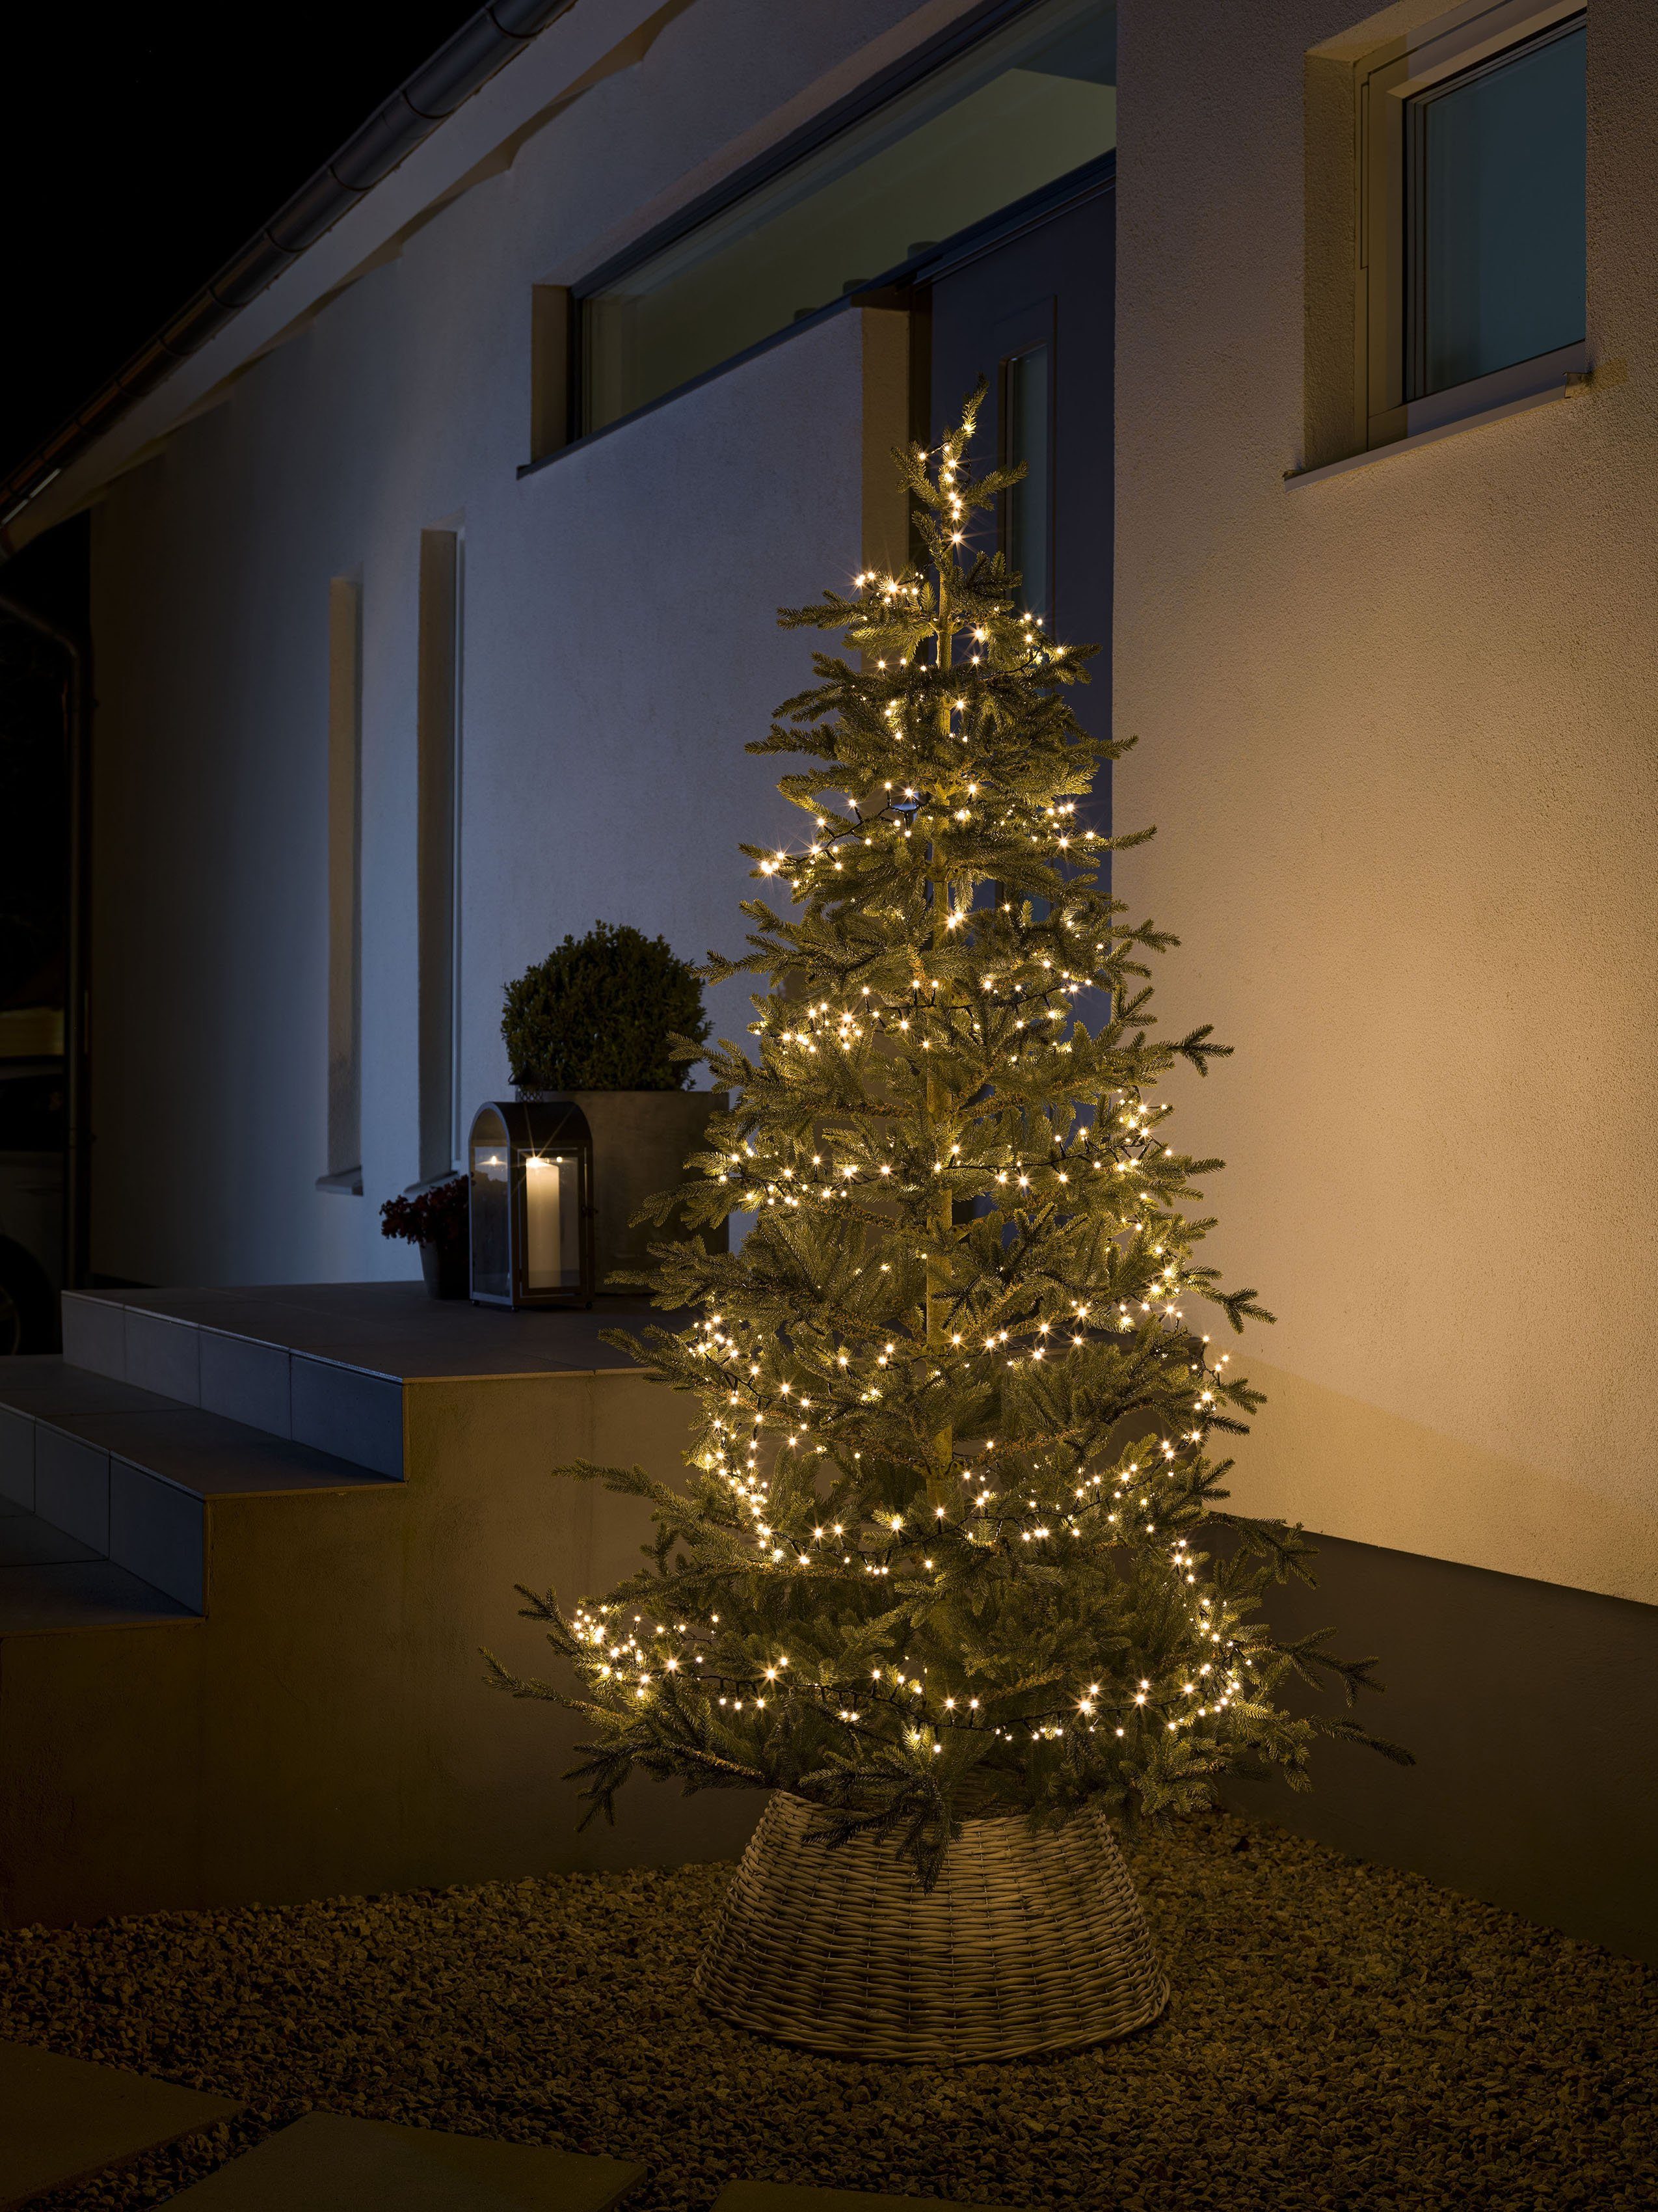 KONSTSMIDE LED-Lichterkette Weihnachtsdeko 800-flammig, Compactlights, 800 aussen, warmweiße Dioden LED Micro